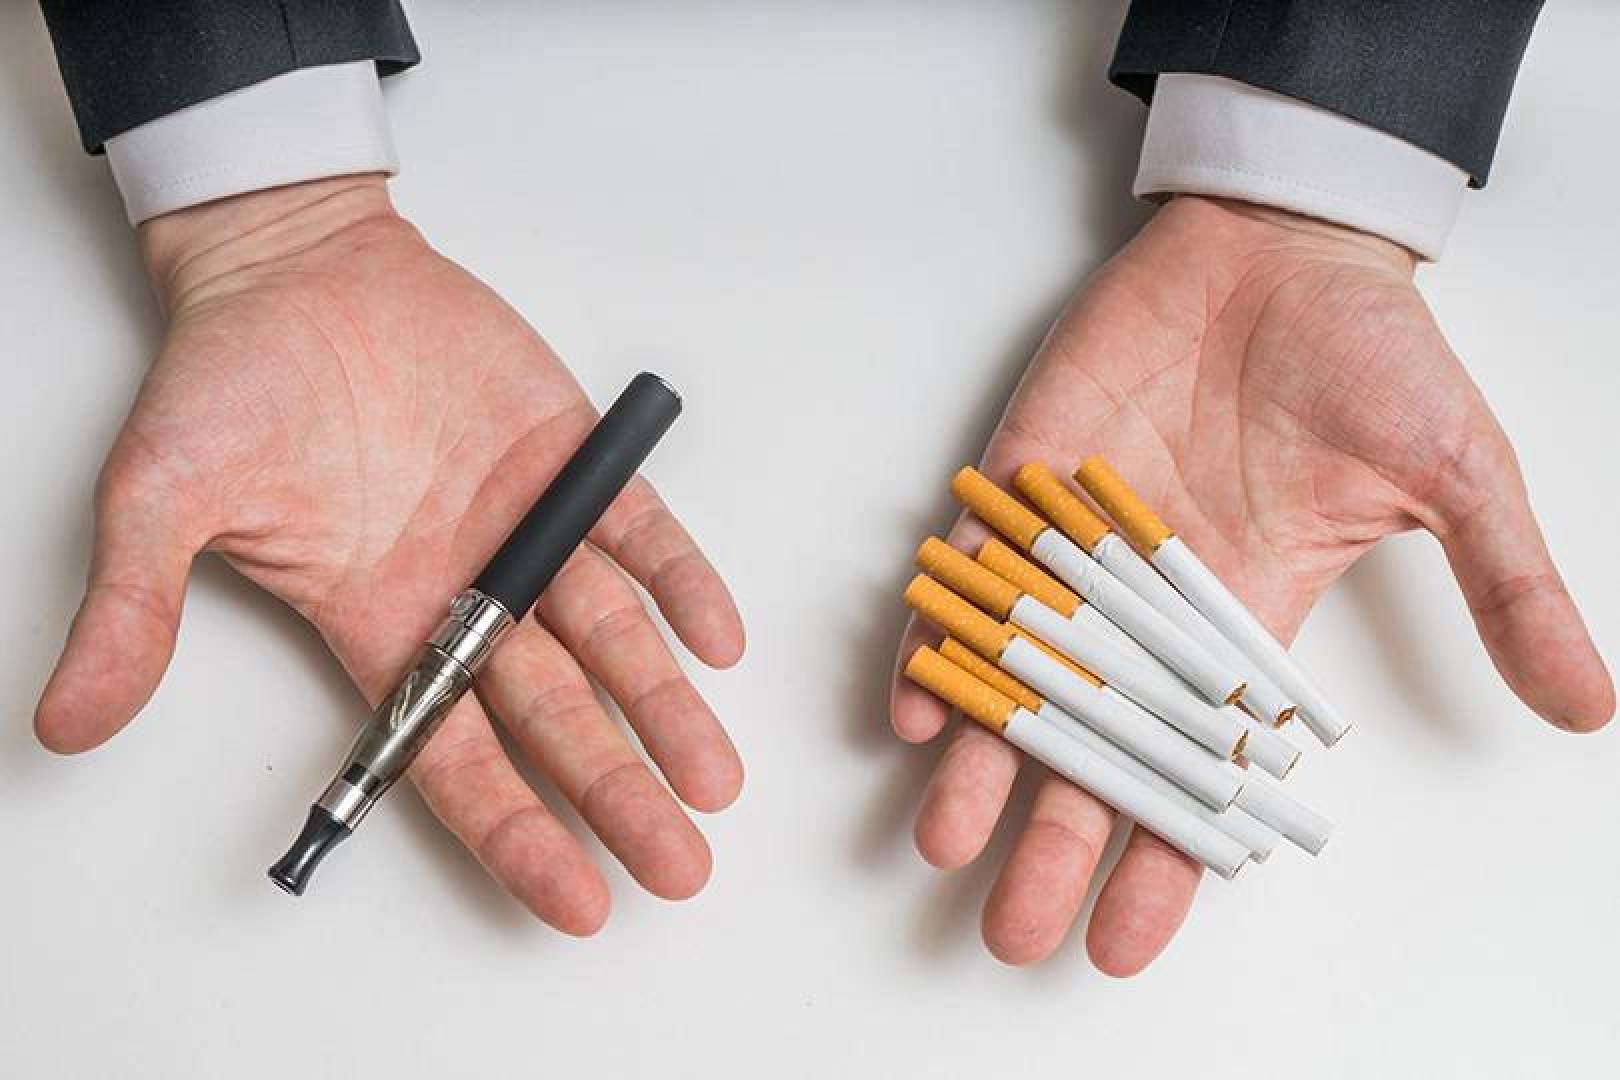 الجمع بين التدخين الإلكتروني والسجائر يزيد خطر الإصابة بالنقرس